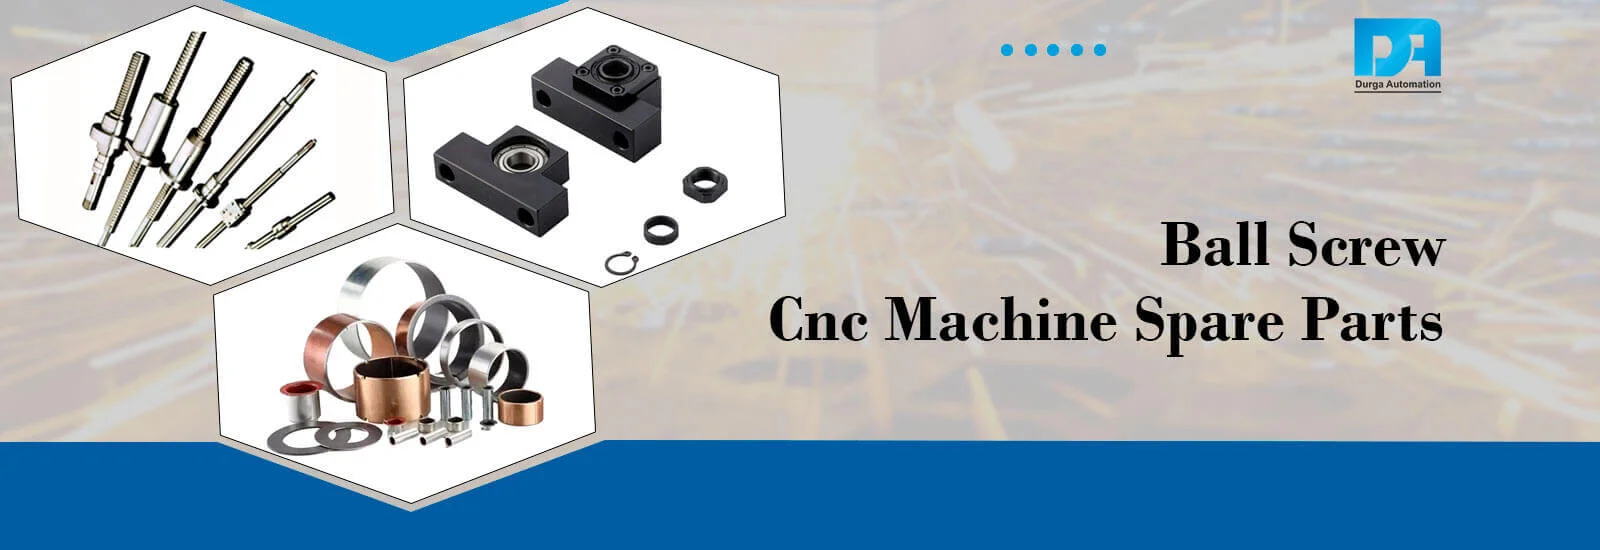 Cnc Machine Spare Parts